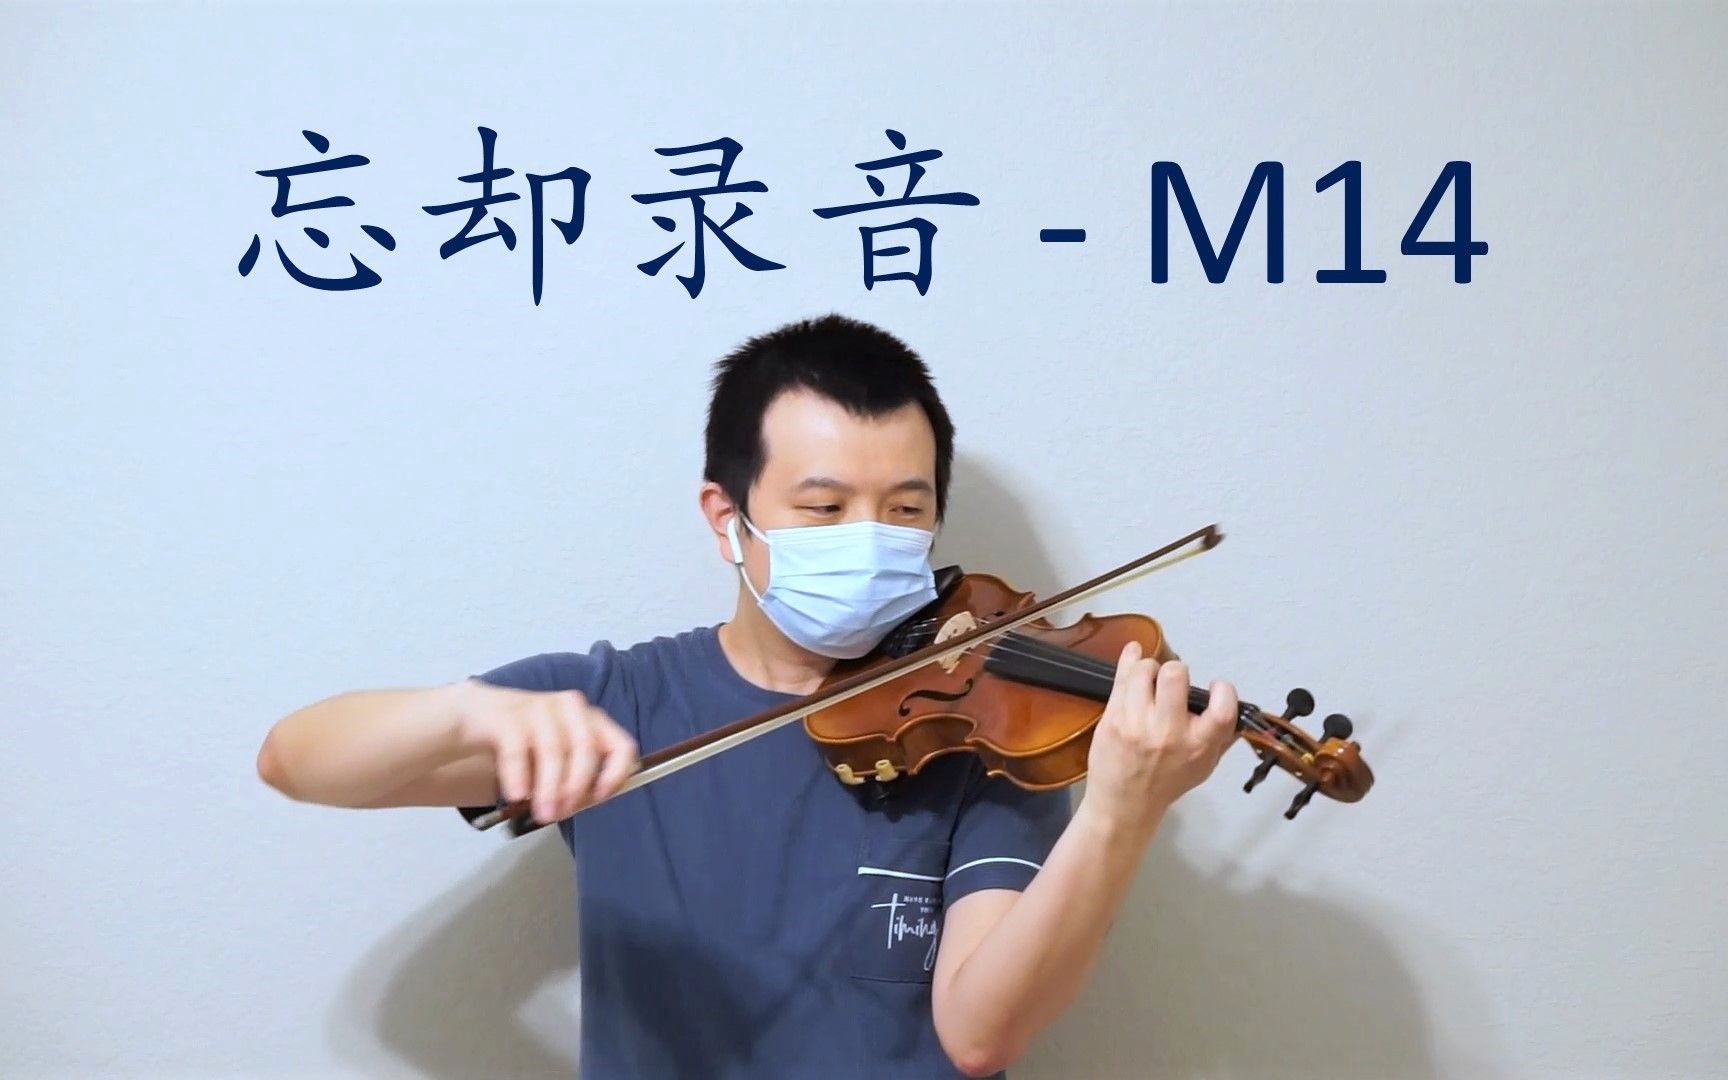 【小提琴】忘却录音 M14 - 空之境界